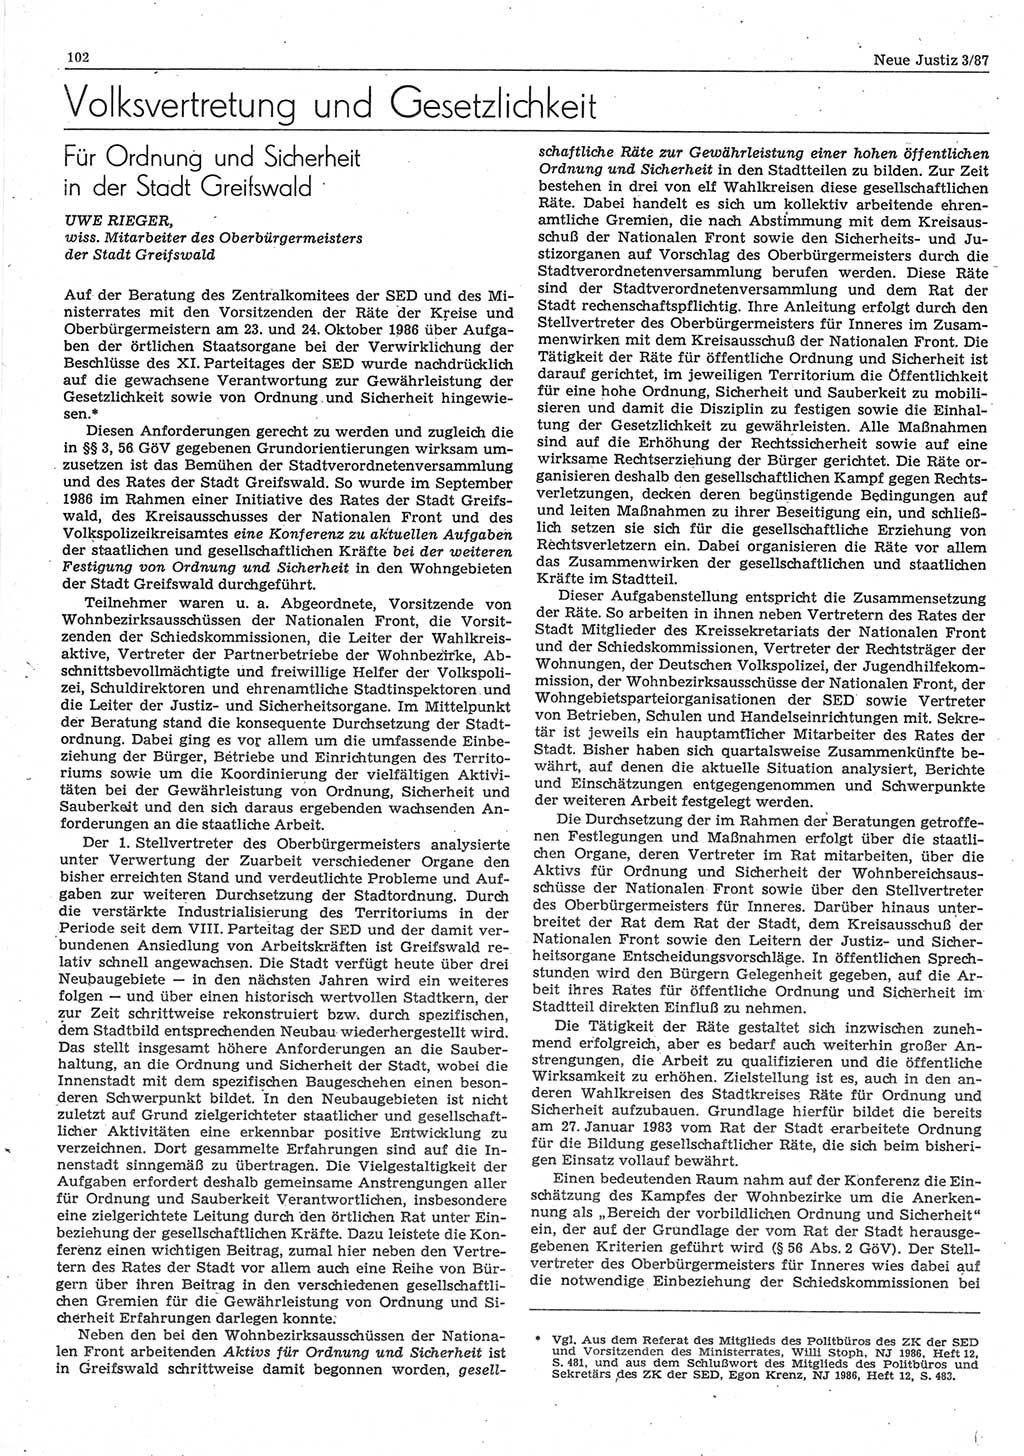 Neue Justiz (NJ), Zeitschrift für sozialistisches Recht und Gesetzlichkeit [Deutsche Demokratische Republik (DDR)], 41. Jahrgang 1987, Seite 102 (NJ DDR 1987, S. 102)